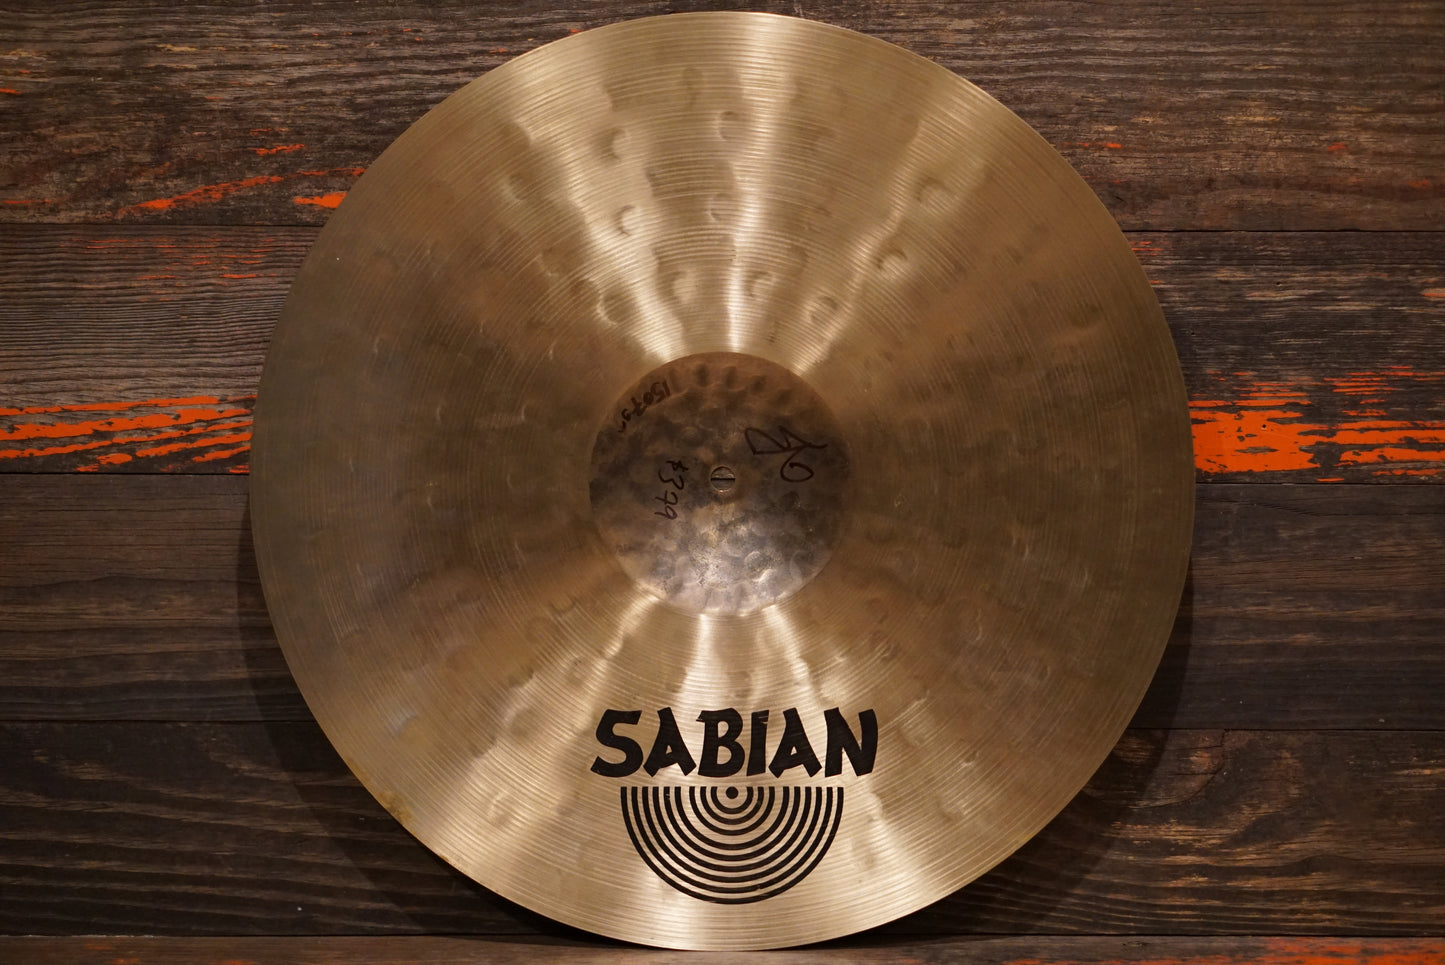 Sabian 19" HHX X-Treme Crash Cymbal - 1507g